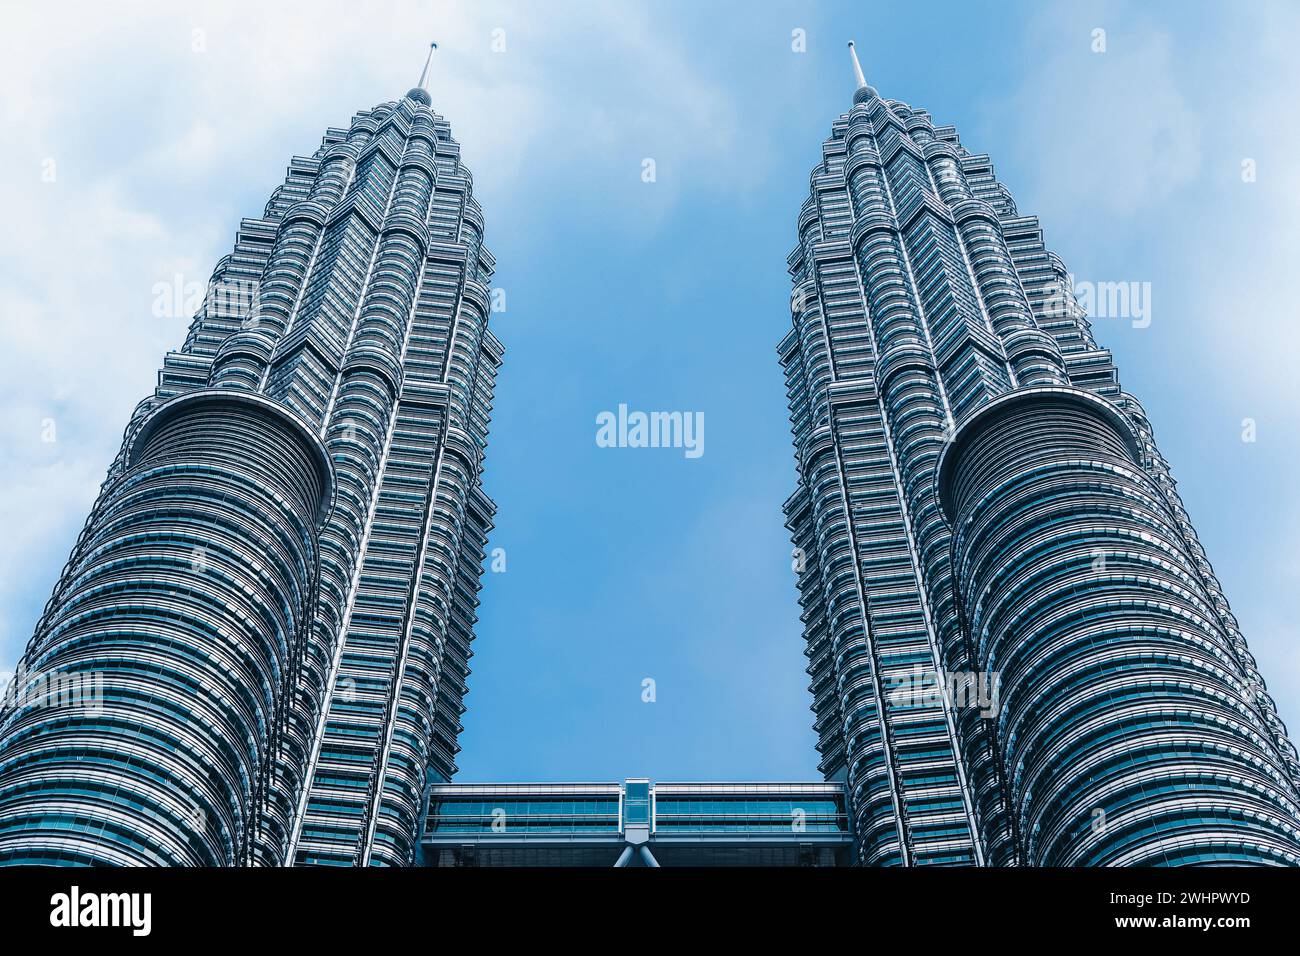 Célèbre bâtiment moderne des tours jumelles Petronas à Kuala Lumpur, Malaisie Banque D'Images